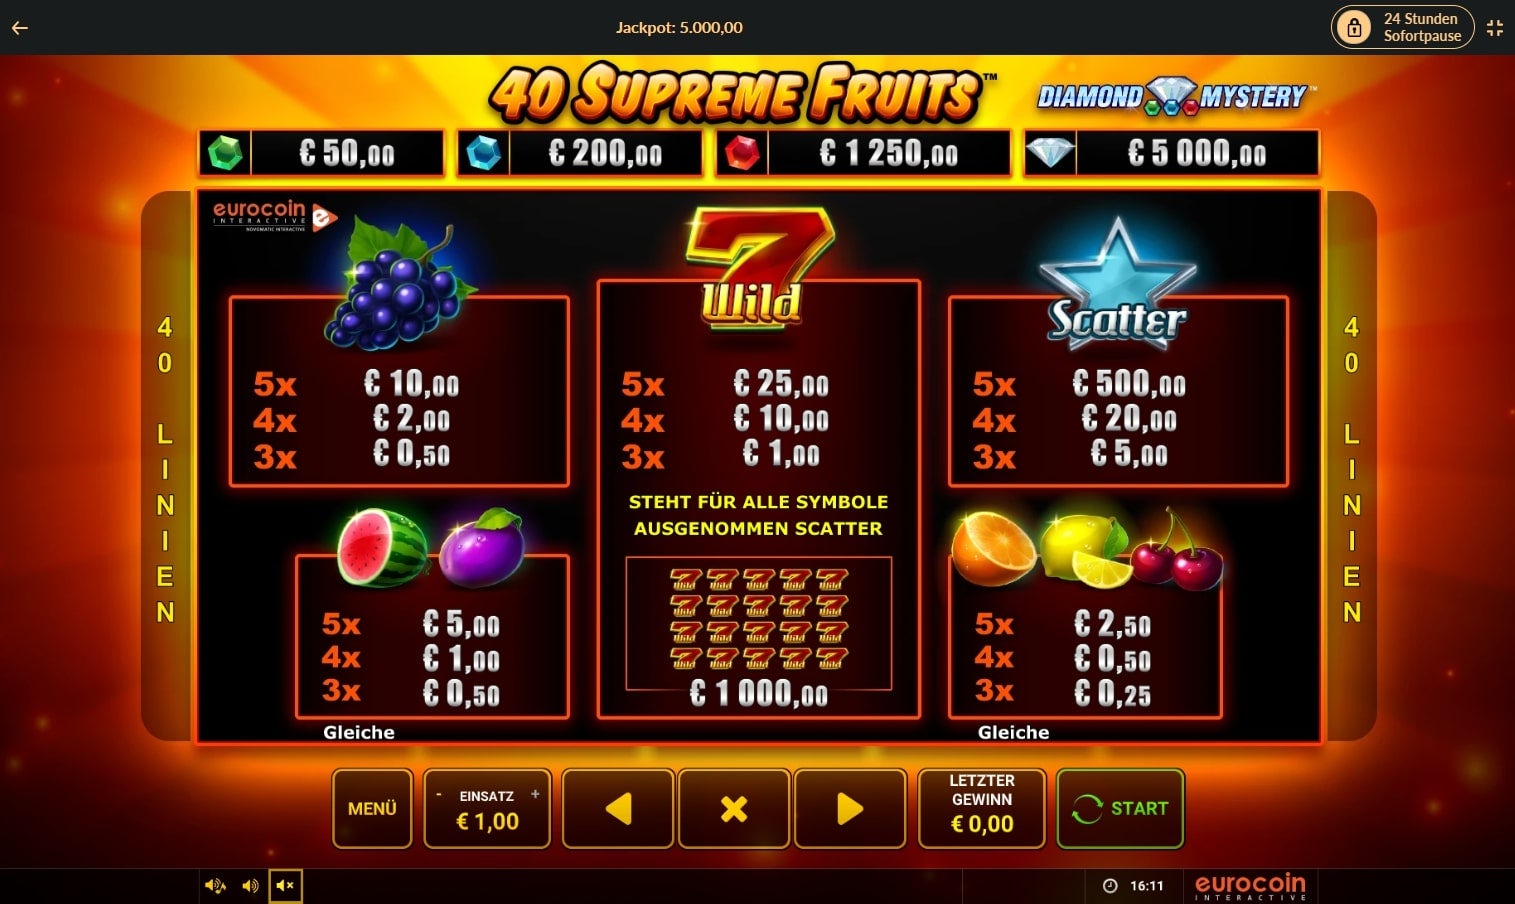 40 supreme fruits jpi bild2